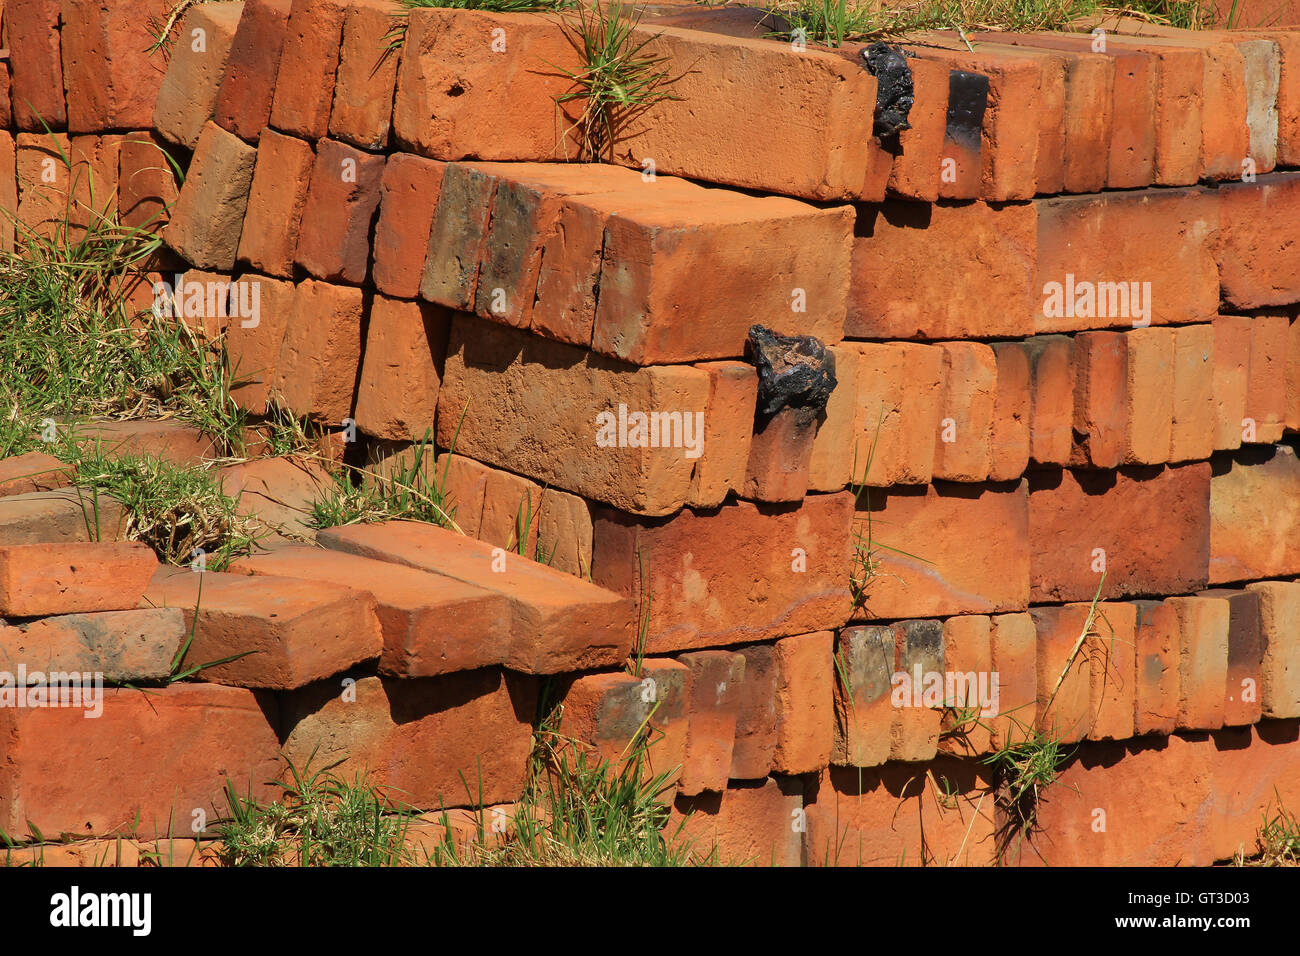 Adobe bricks stacked at a construction site in Cotacachi, Ecuador Stock Photo